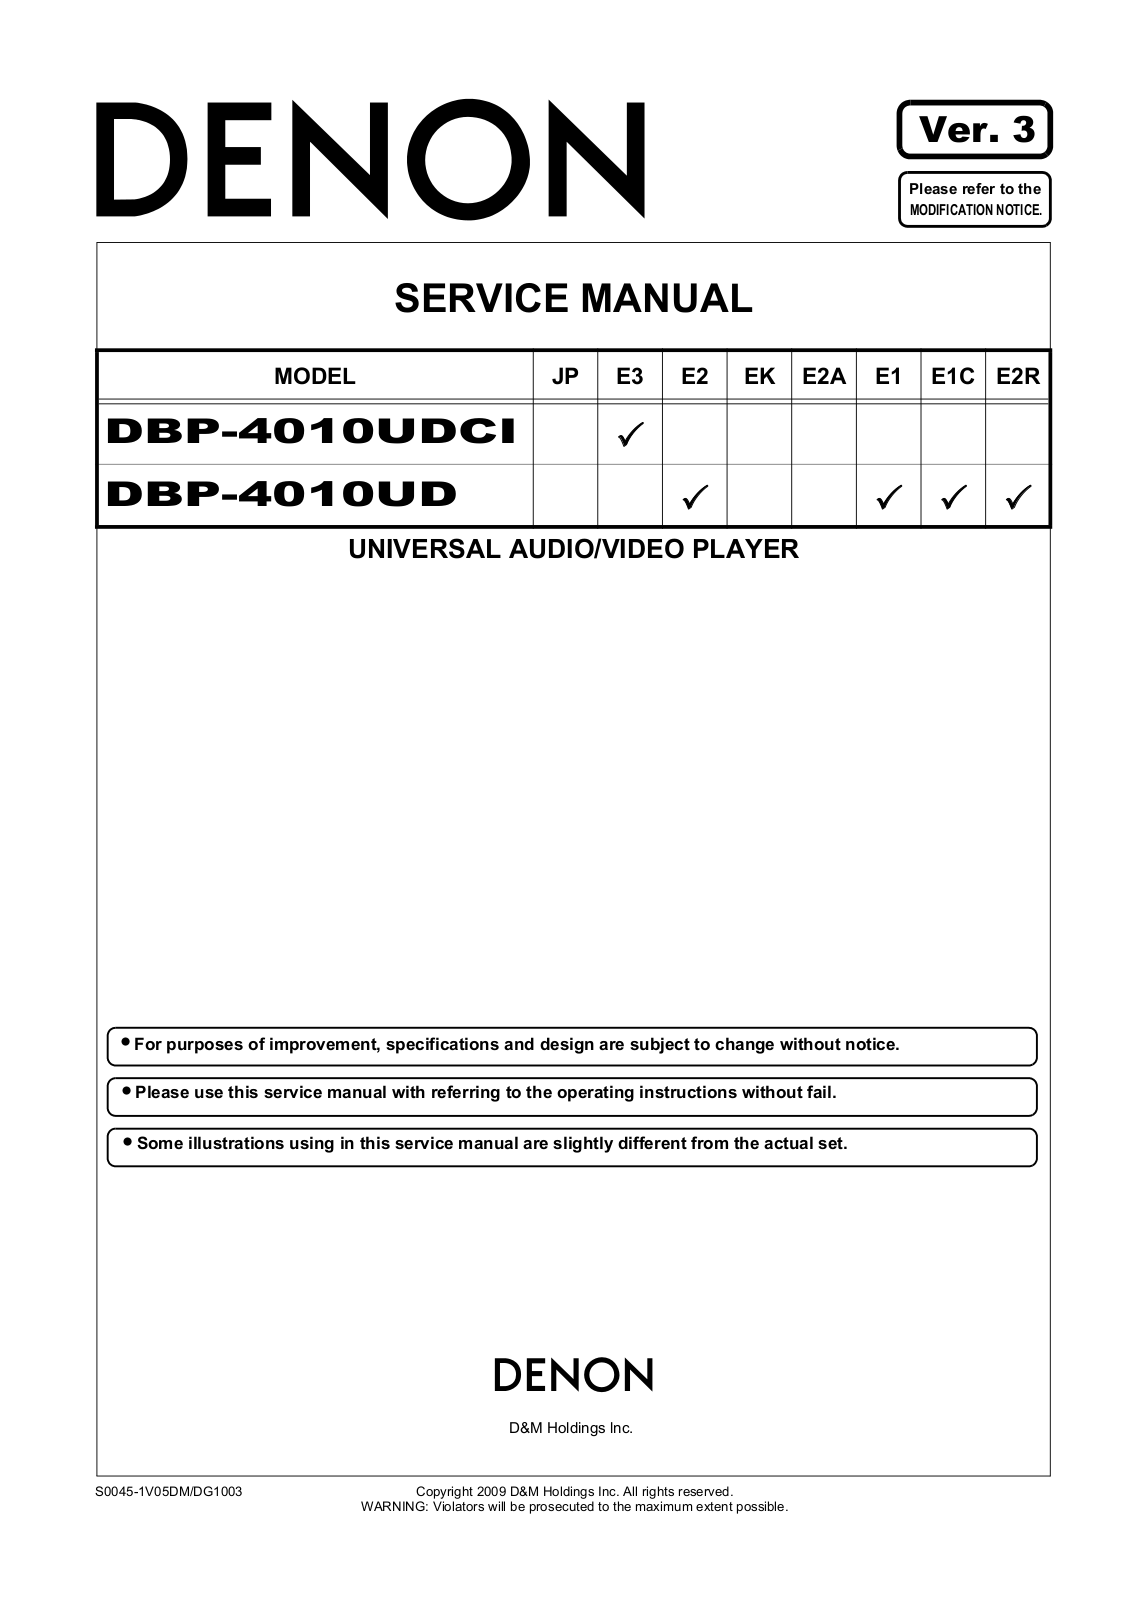 Denon DBP-4010UDCI, DBP-4010UD Service Manual